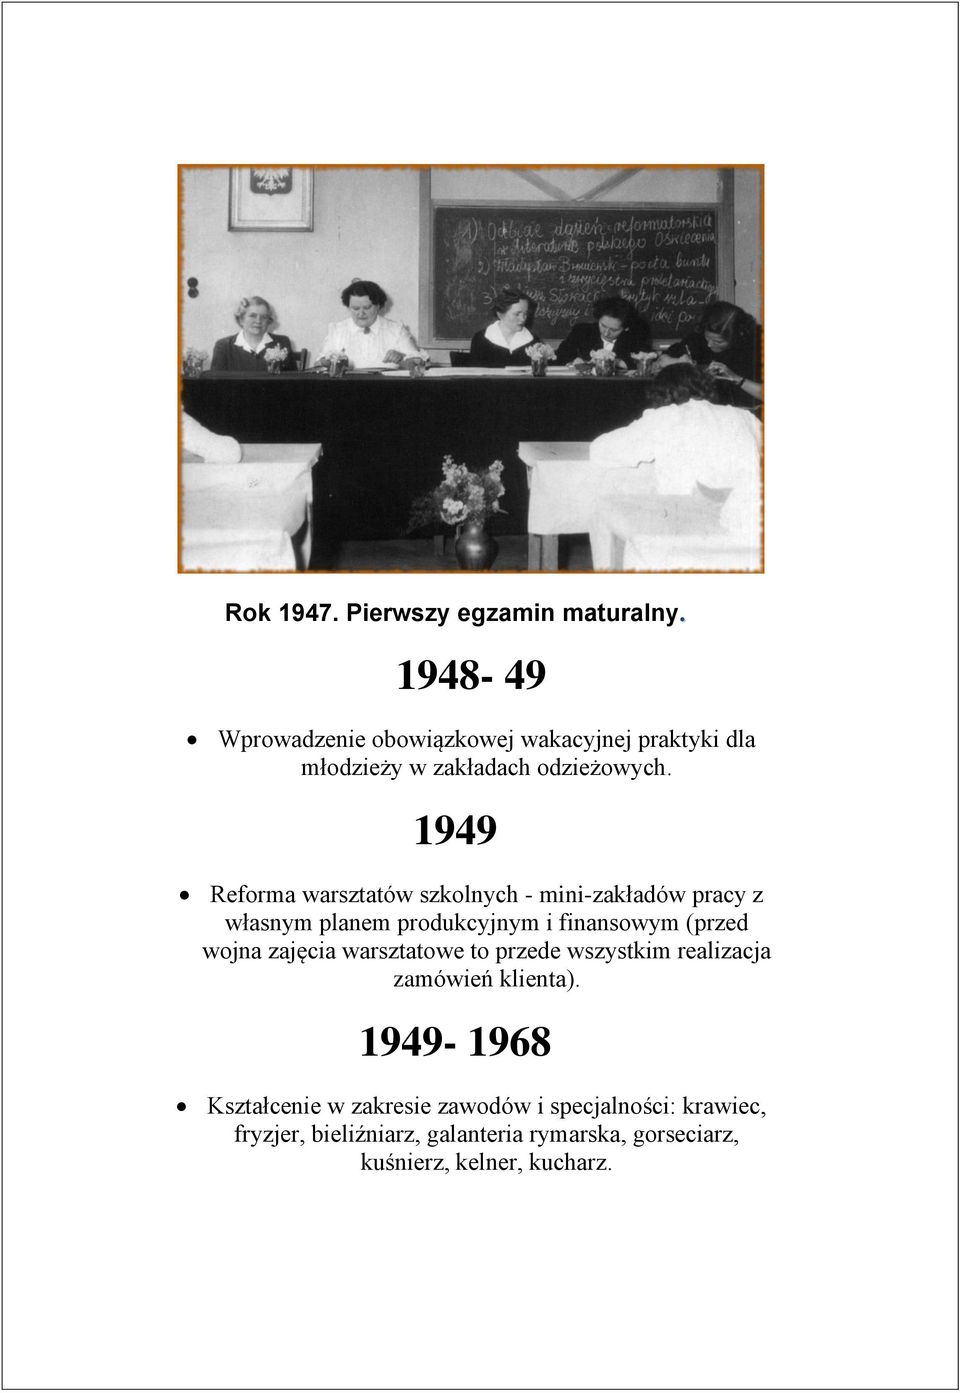 1949 Reforma warsztatów szkolnych - mini-zakładów pracy z własnym planem produkcyjnym i finansowym (przed wojna